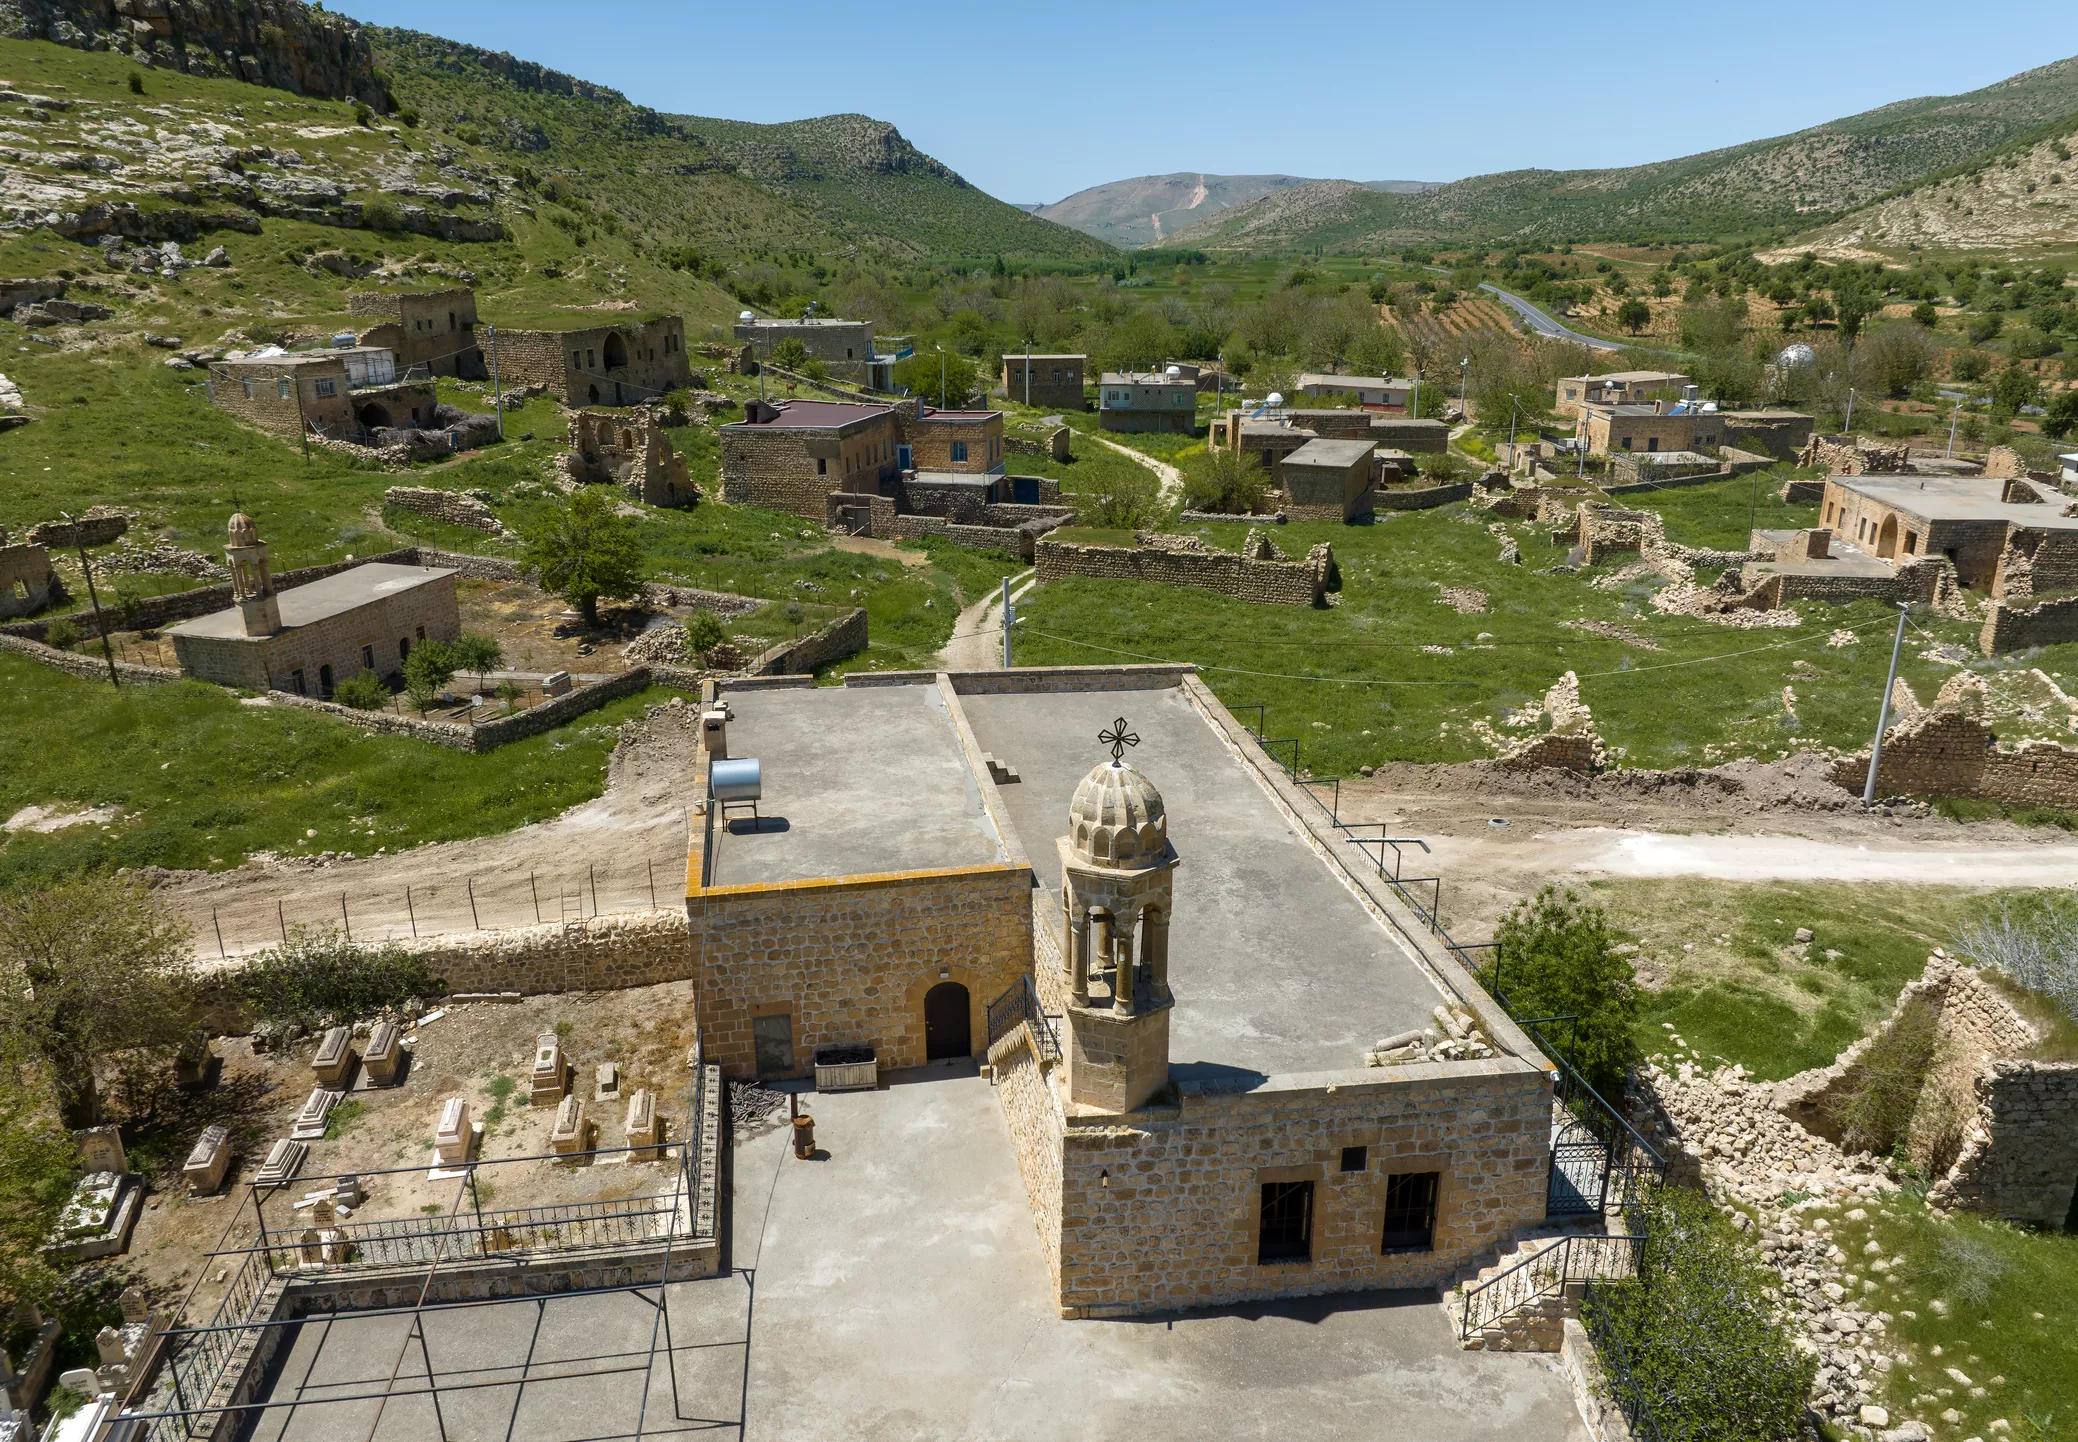 Vista del poble abandonat de Killit, prop de la ciutat de Savur, al sud-est de Turquia. El poble estava habitat per cristians ortodoxos sirians